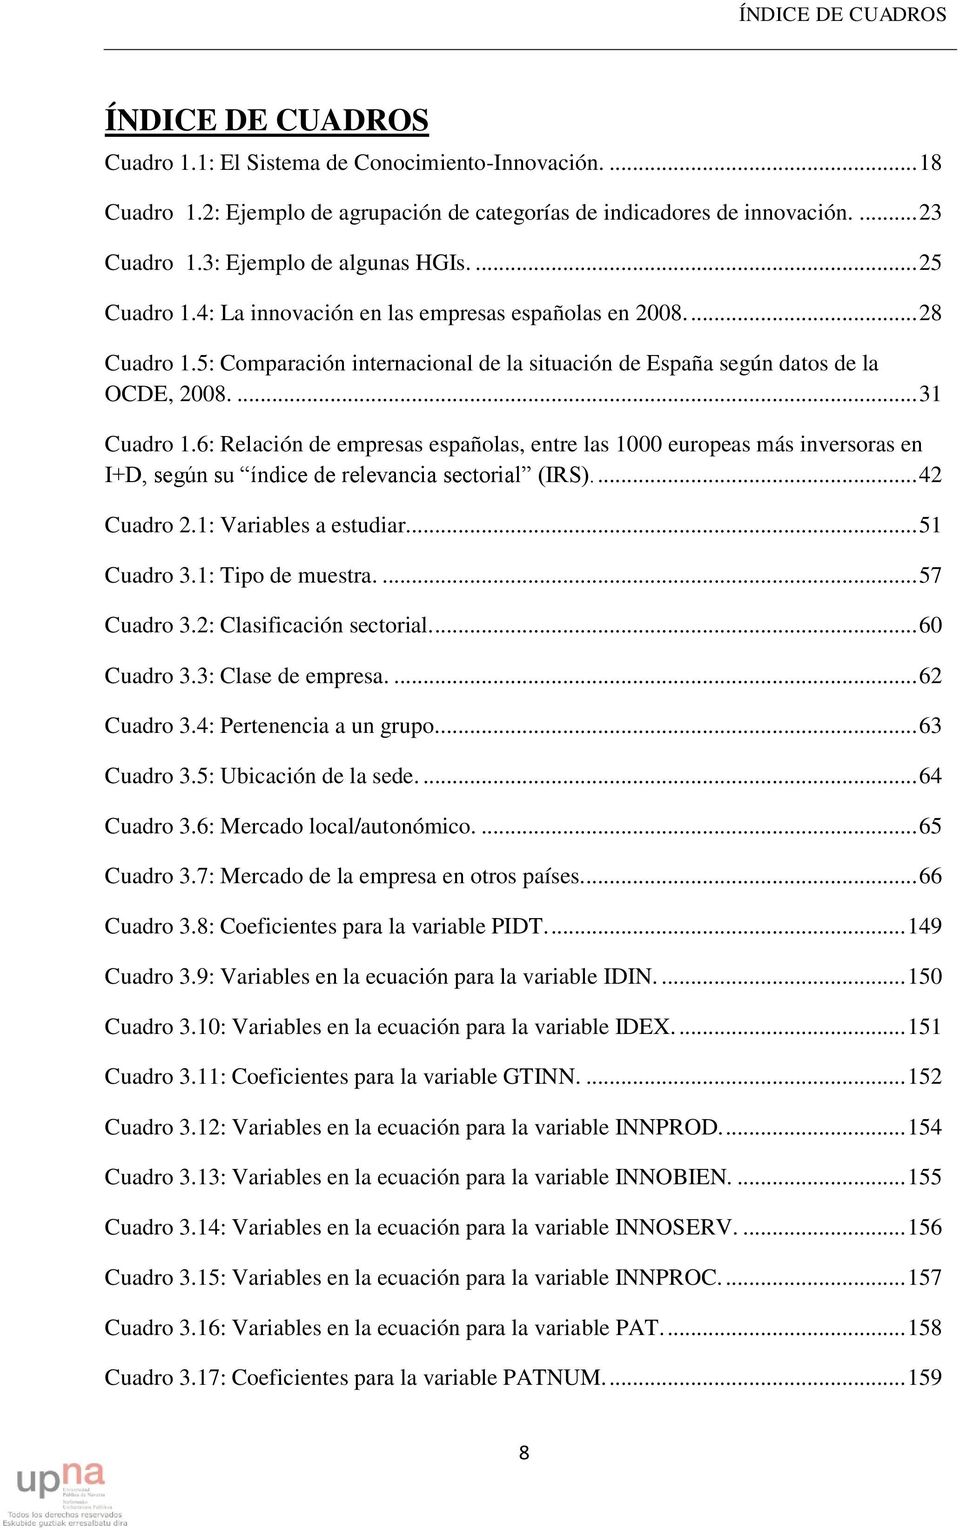 ... 31 Cuadro 1.6: Relación de empresas españolas, entre las 1000 europeas más inversoras en I+D, según su índice de relevancia sectorial (IRS).... 42 Cuadro 2.1: Variables a estudiar... 51 Cuadro 3.